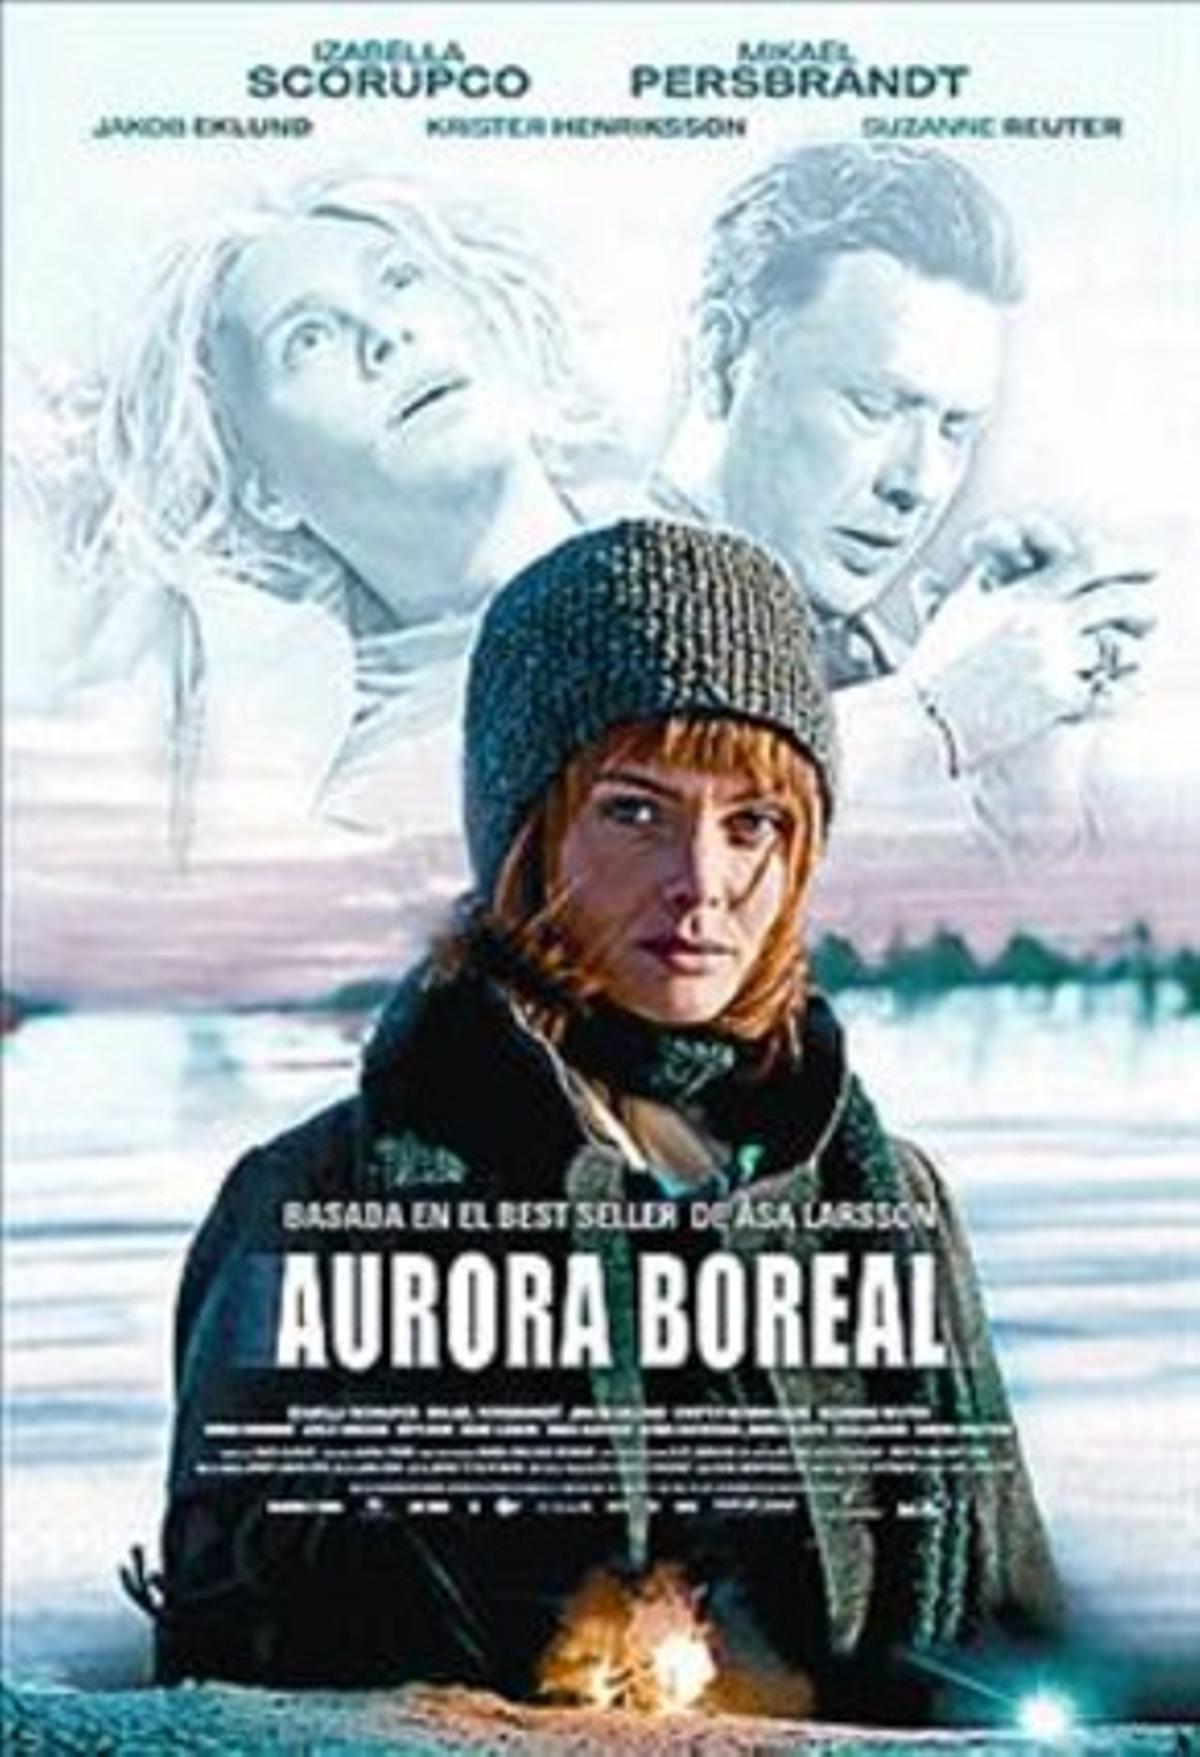 Aurora boreal Entre Fargo i Millennium_MEDIA_1